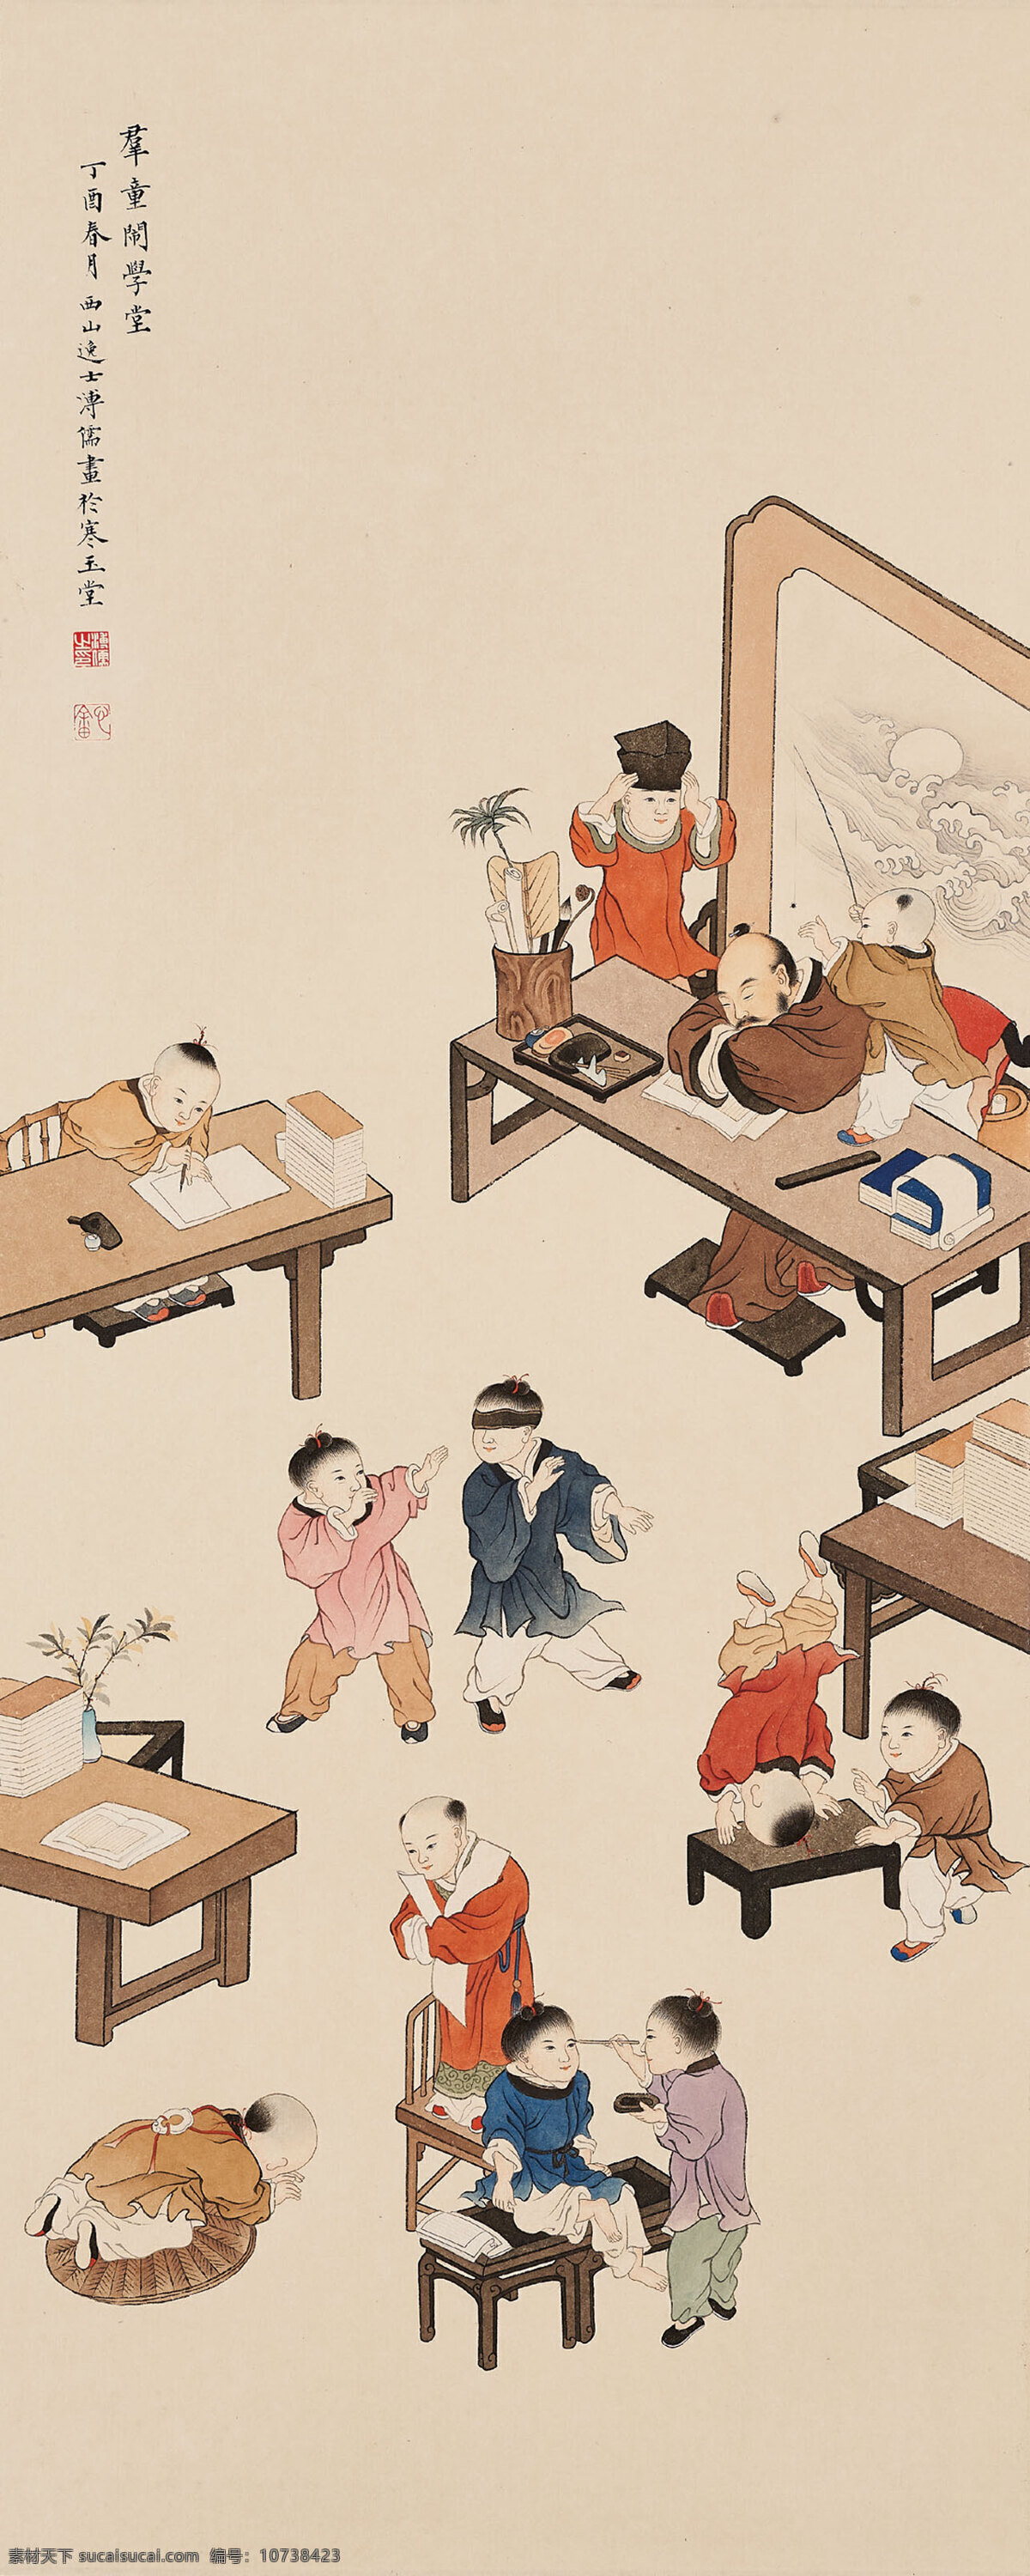 闹学堂 溥儒作品 古代 小孩子们 教书先生 打盹 玩耍 中国古代画 中国古画 文化艺术 绘画书法